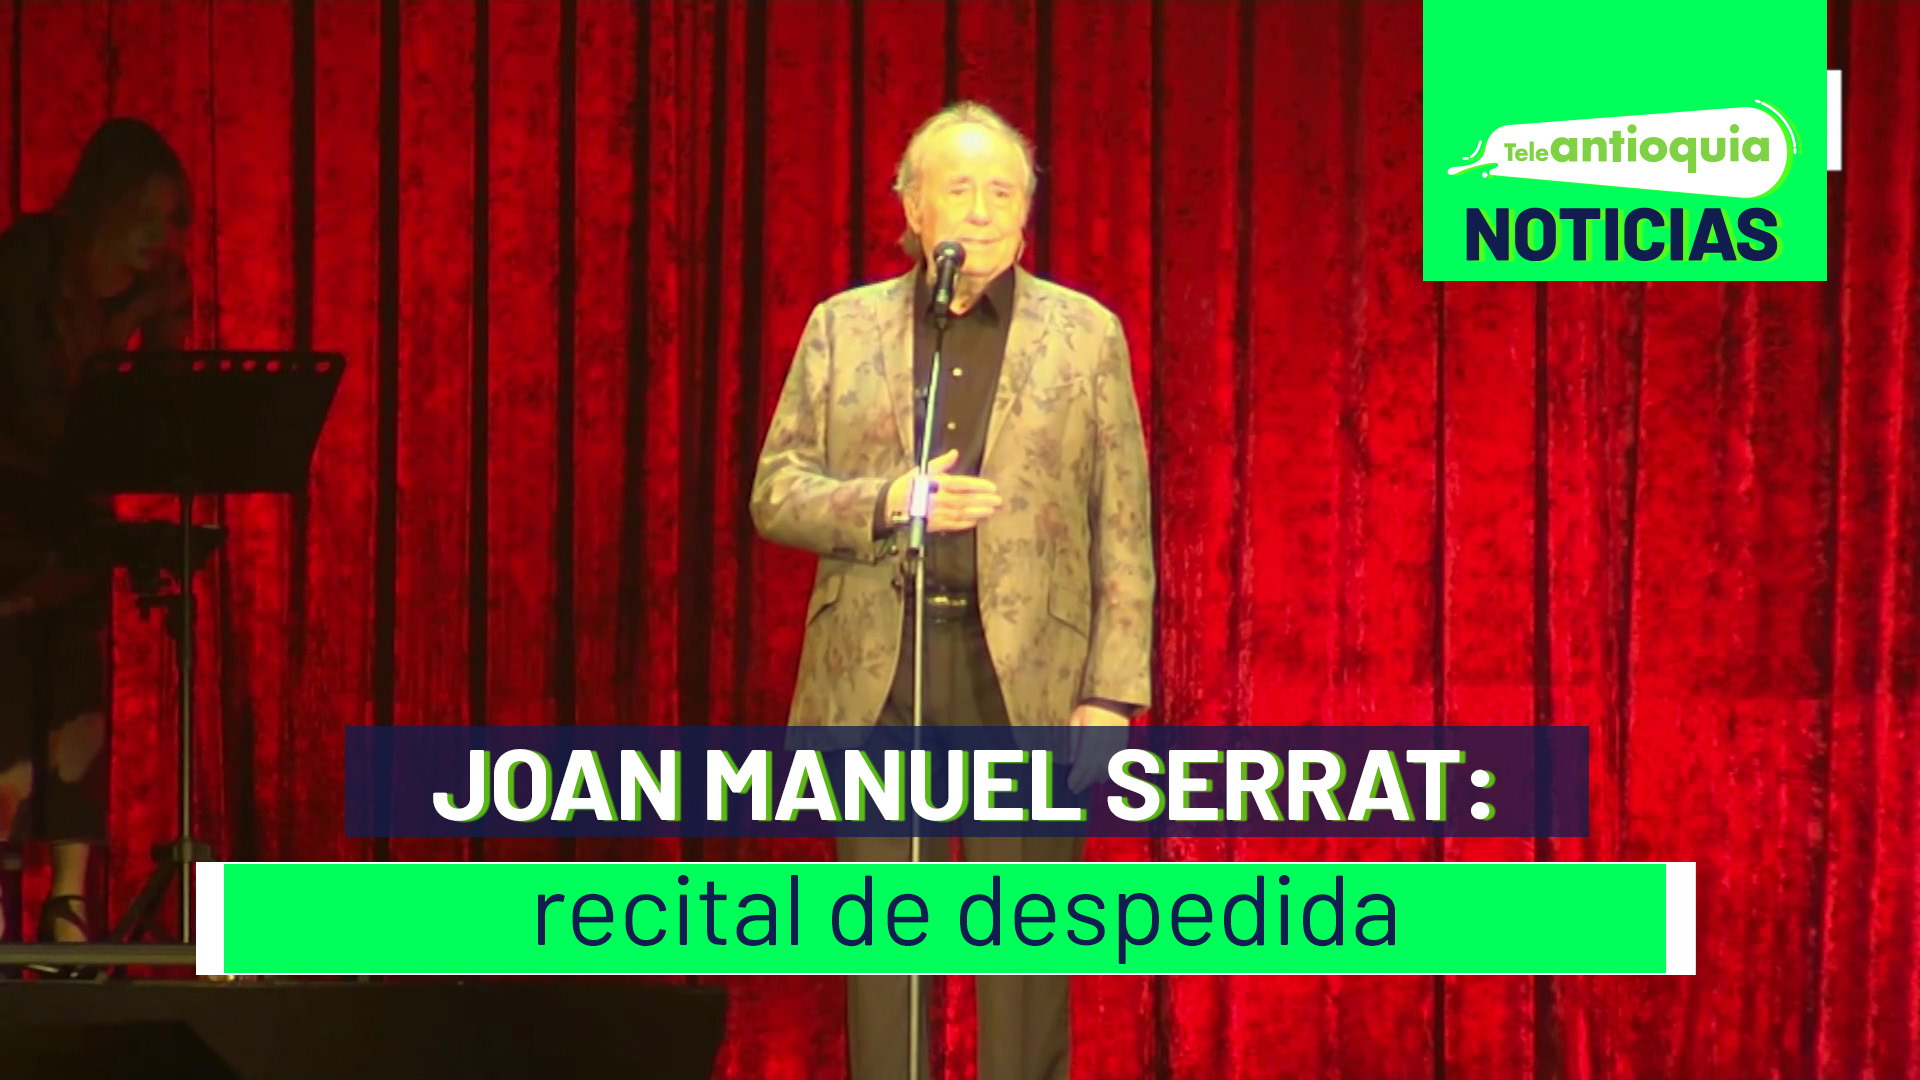 Joan Manuel Serrat: recital de despedida